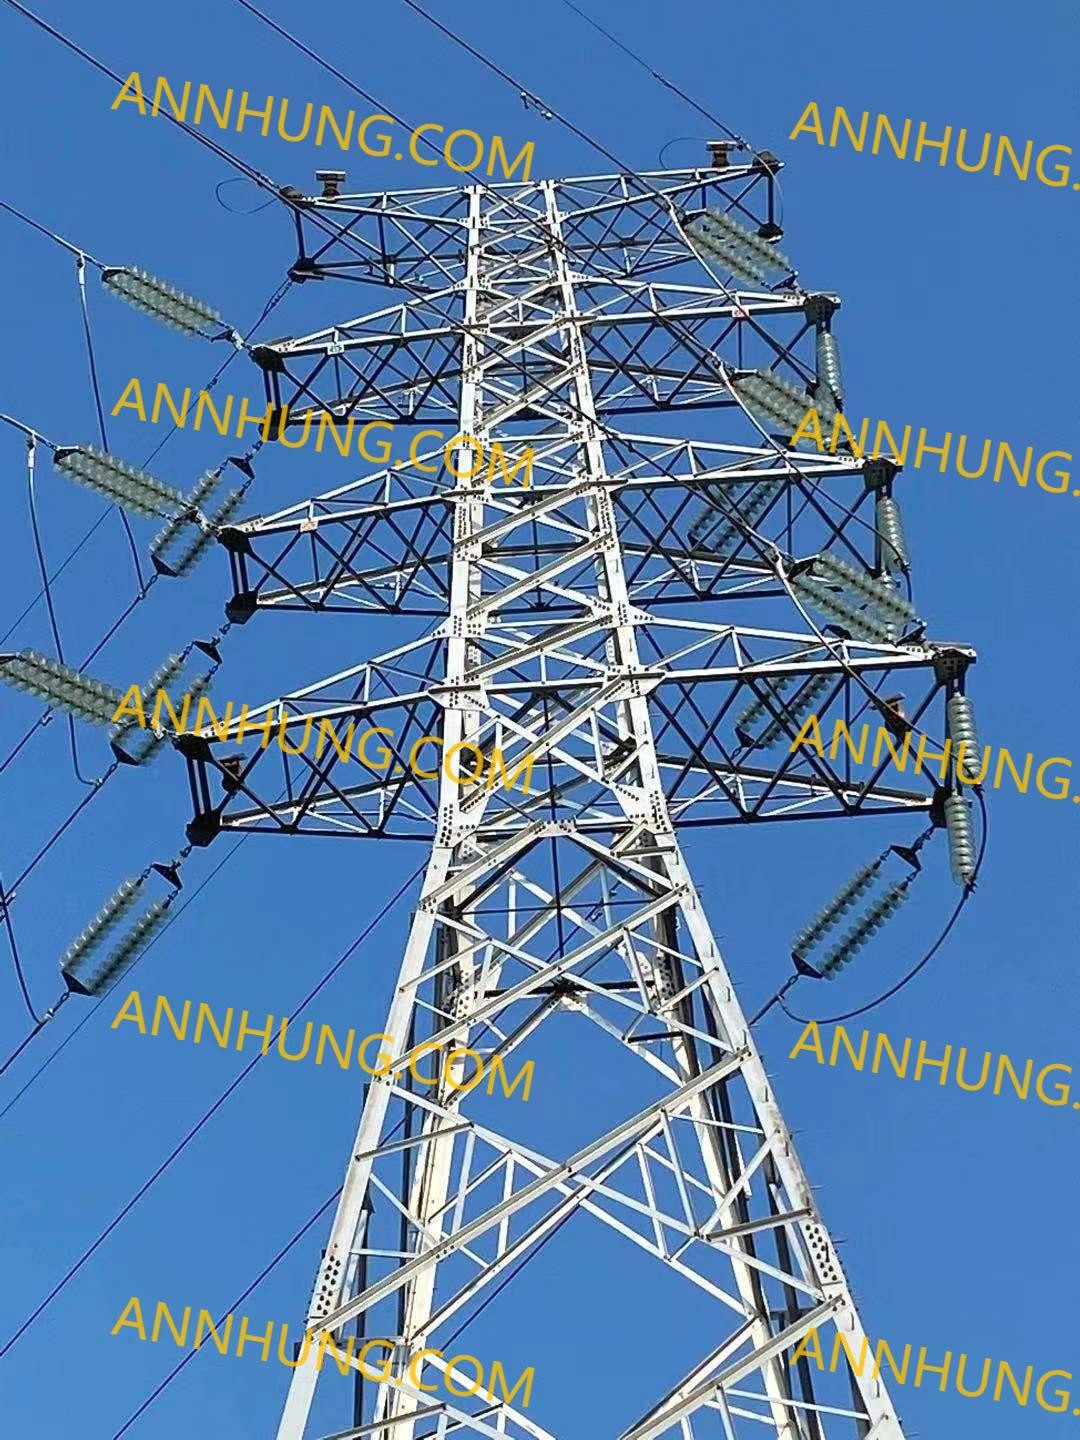 najnowsza sprawa firmy na temat Xinbaiguang XBZH-1 standardowy projekt relokacji linii przesyłowej 110 kV i powyżej, światło ostrzegawcze samolotu słonecznego o średniej intensywności